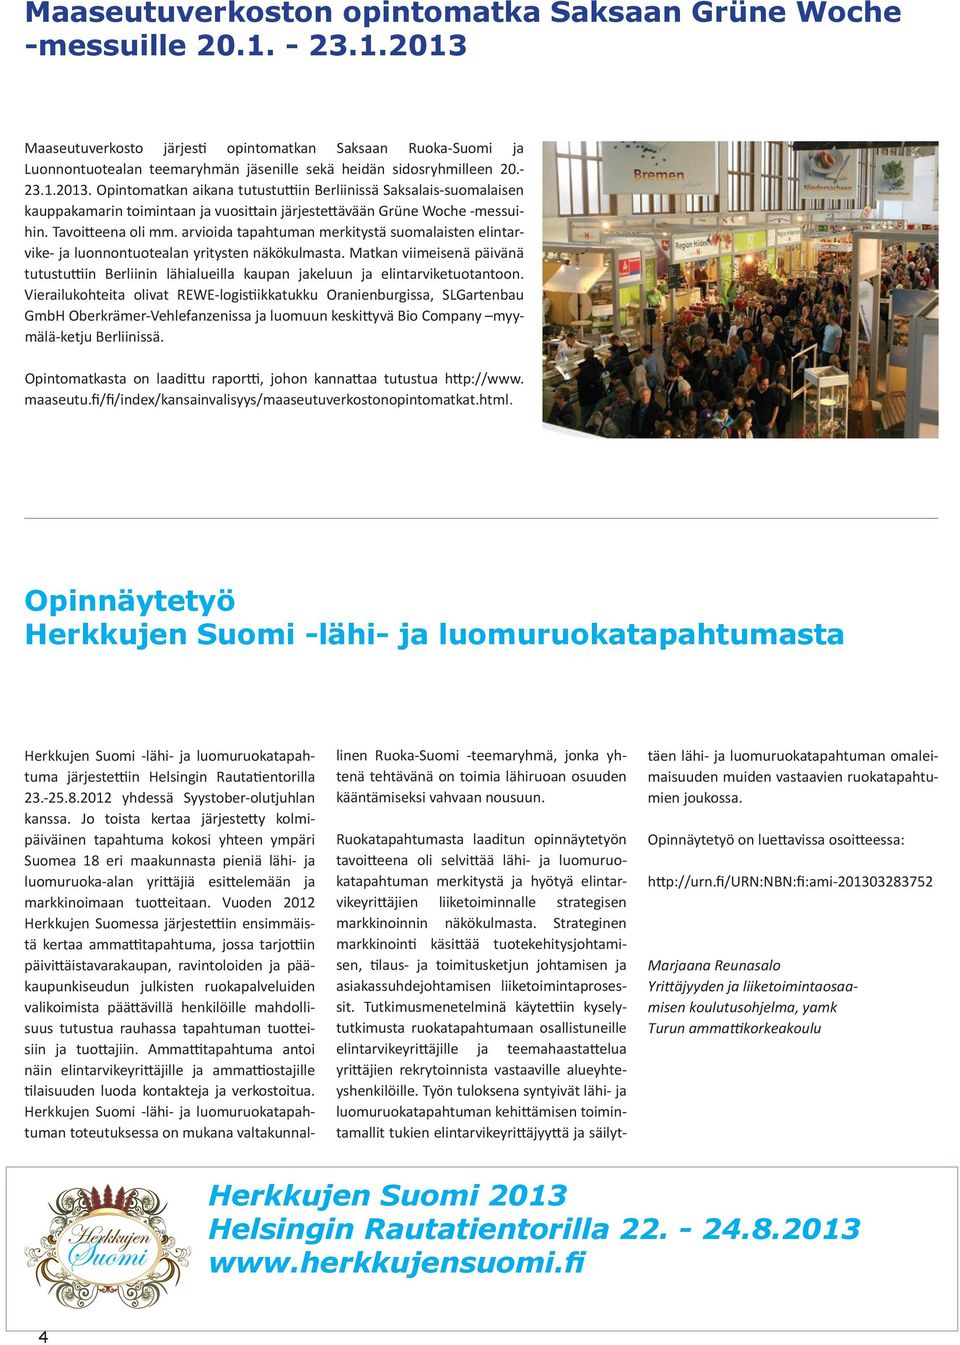 Tavoitteena oli mm. arvioida tapahtuman merkitystä suomalaisten elintarvike- ja luonnontuotealan yritysten näkökulmasta.